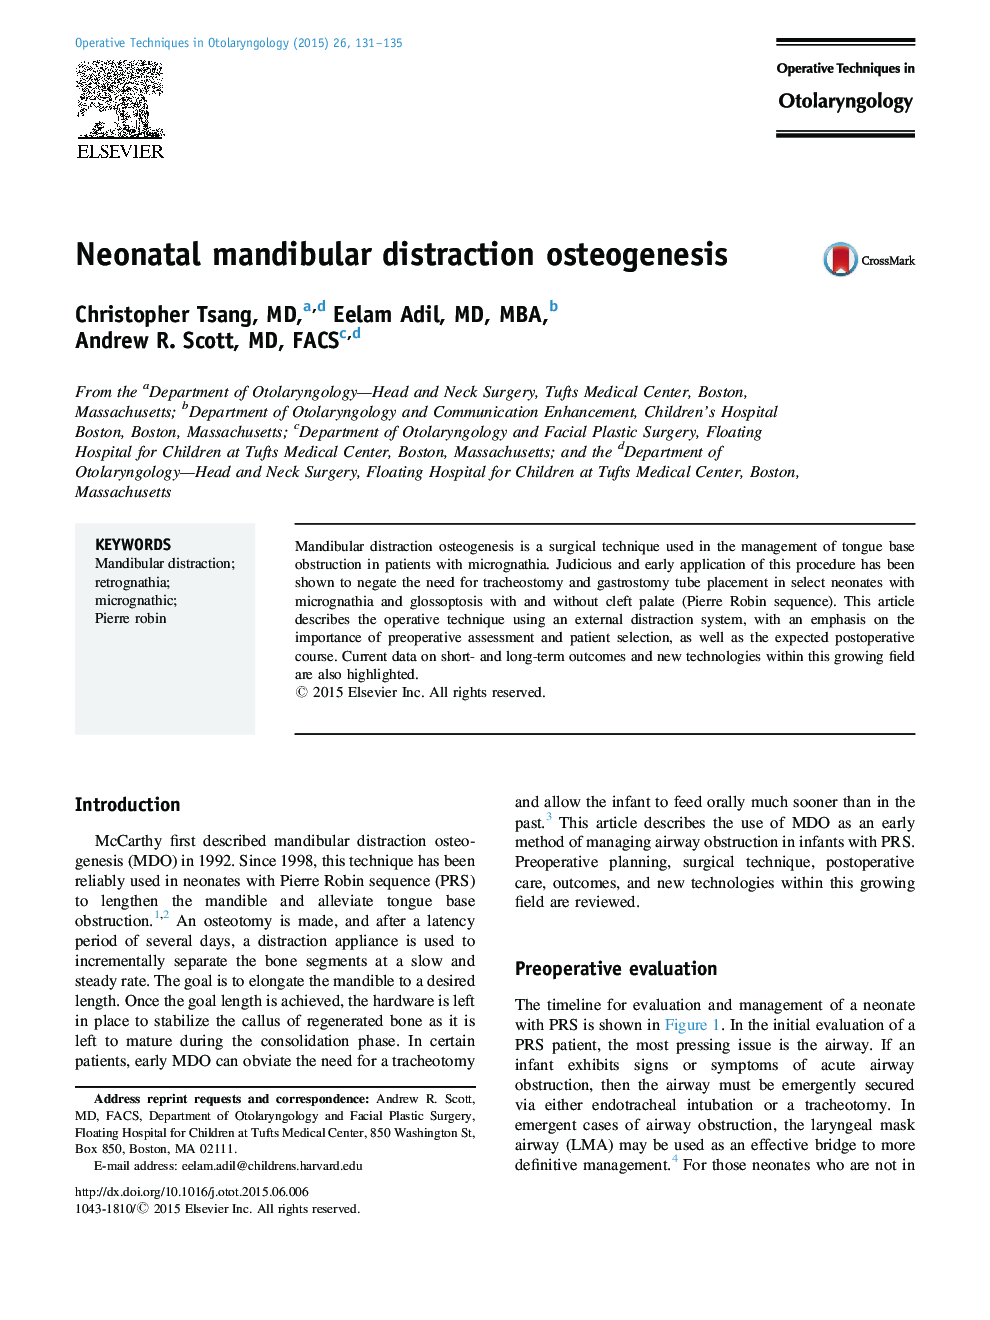 Neonatal mandibular distraction osteogenesis